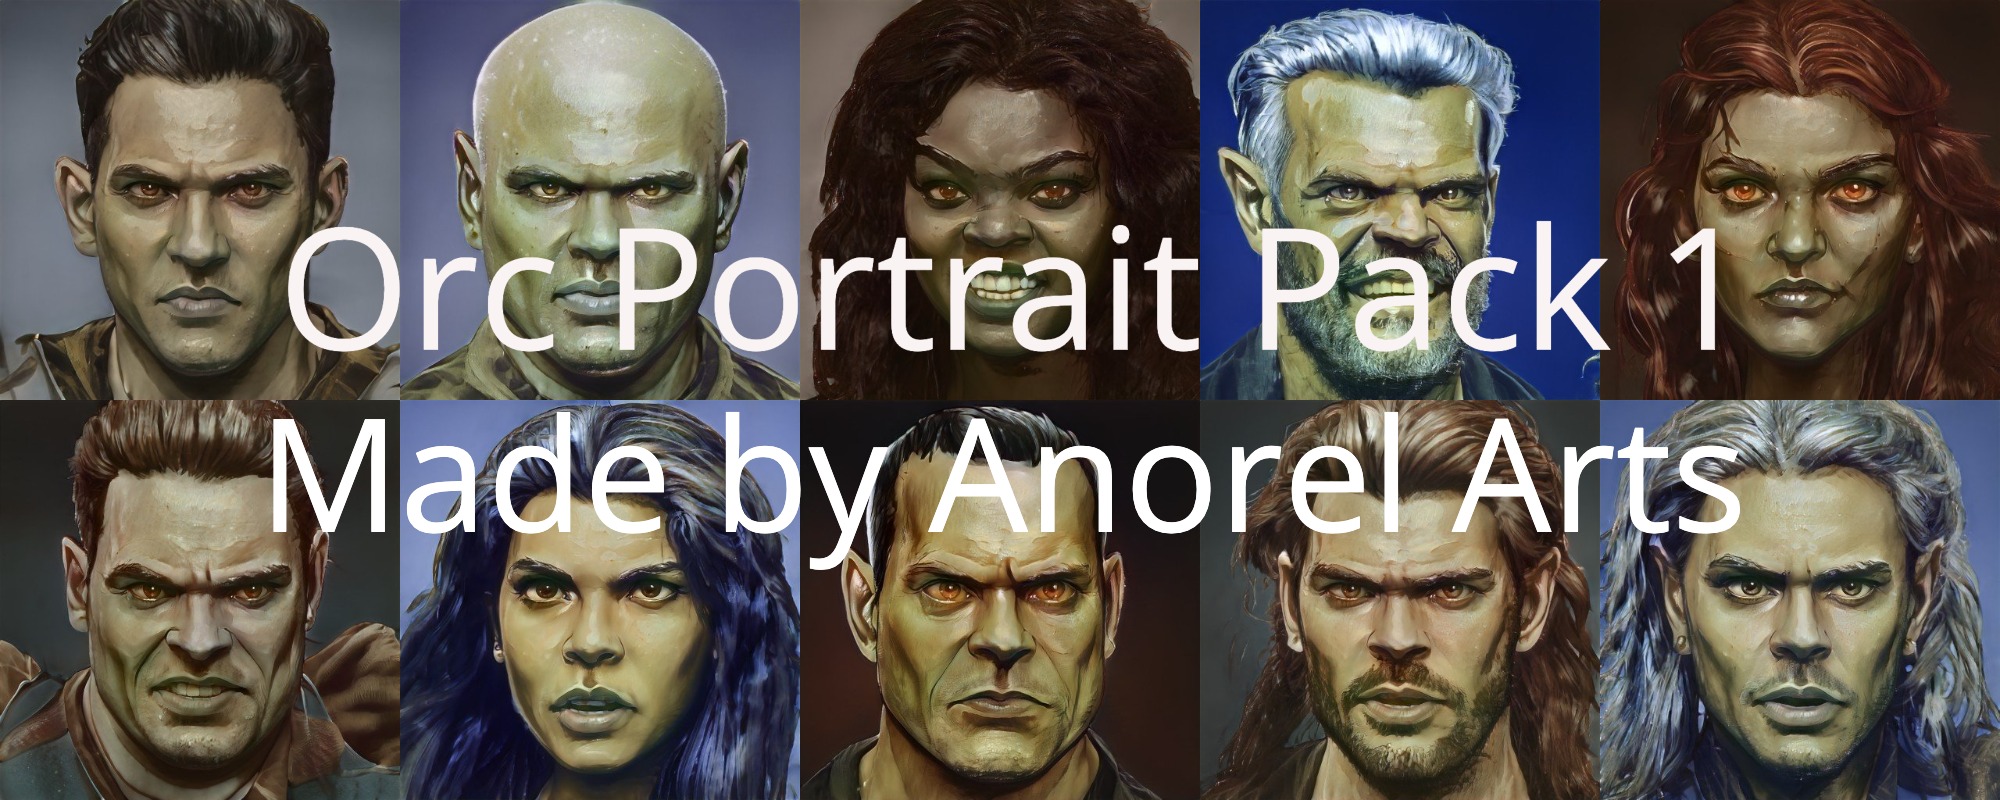 Orc Portrait Pack 1